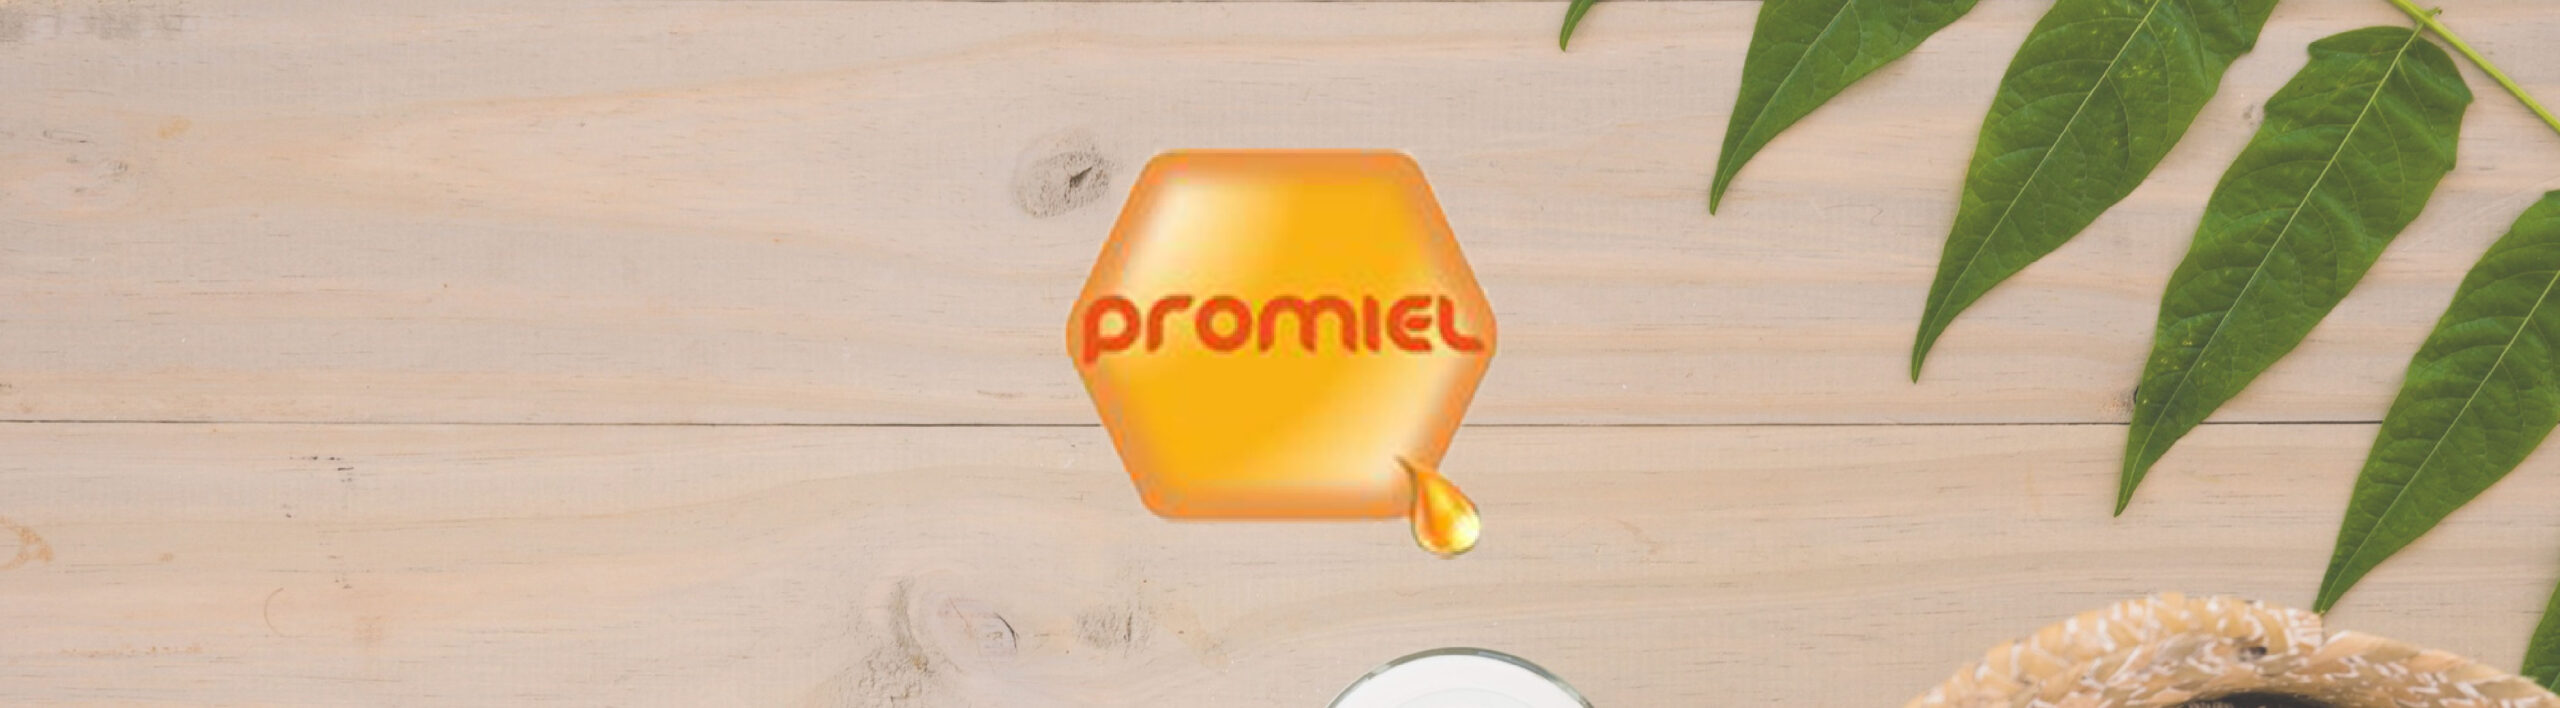 Banner promocional de la marca Promiel con un fondo de madera natural y hojas verdes